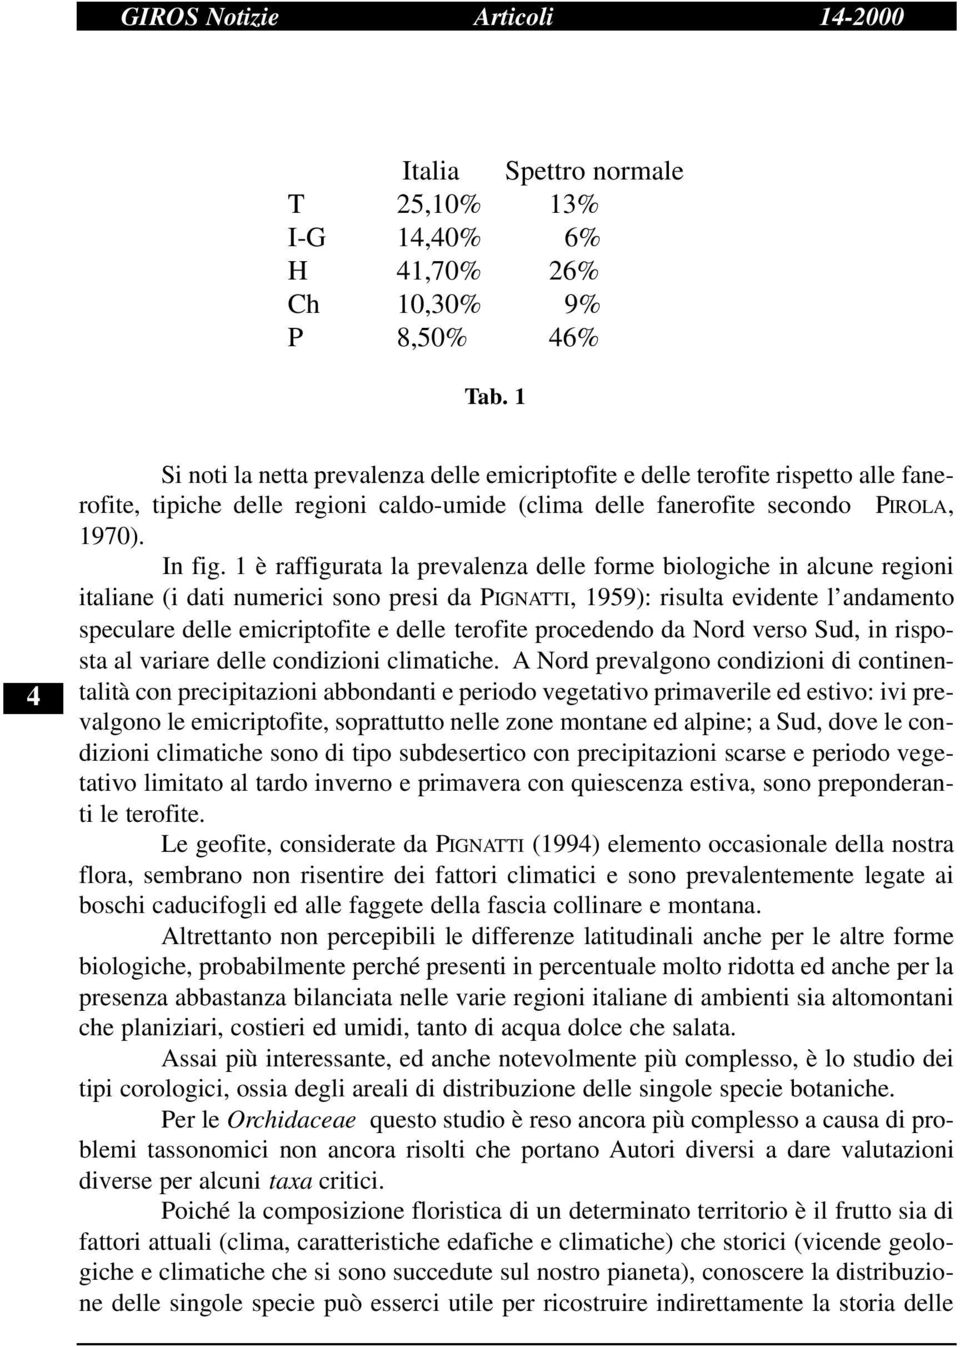 1 è raffigurata la prevalenza delle forme biologiche in alcune regioni italiane (i dati numerici sono presi da PIGNATTI, 1959): risulta evidente l andamento speculare delle emicriptofite e delle